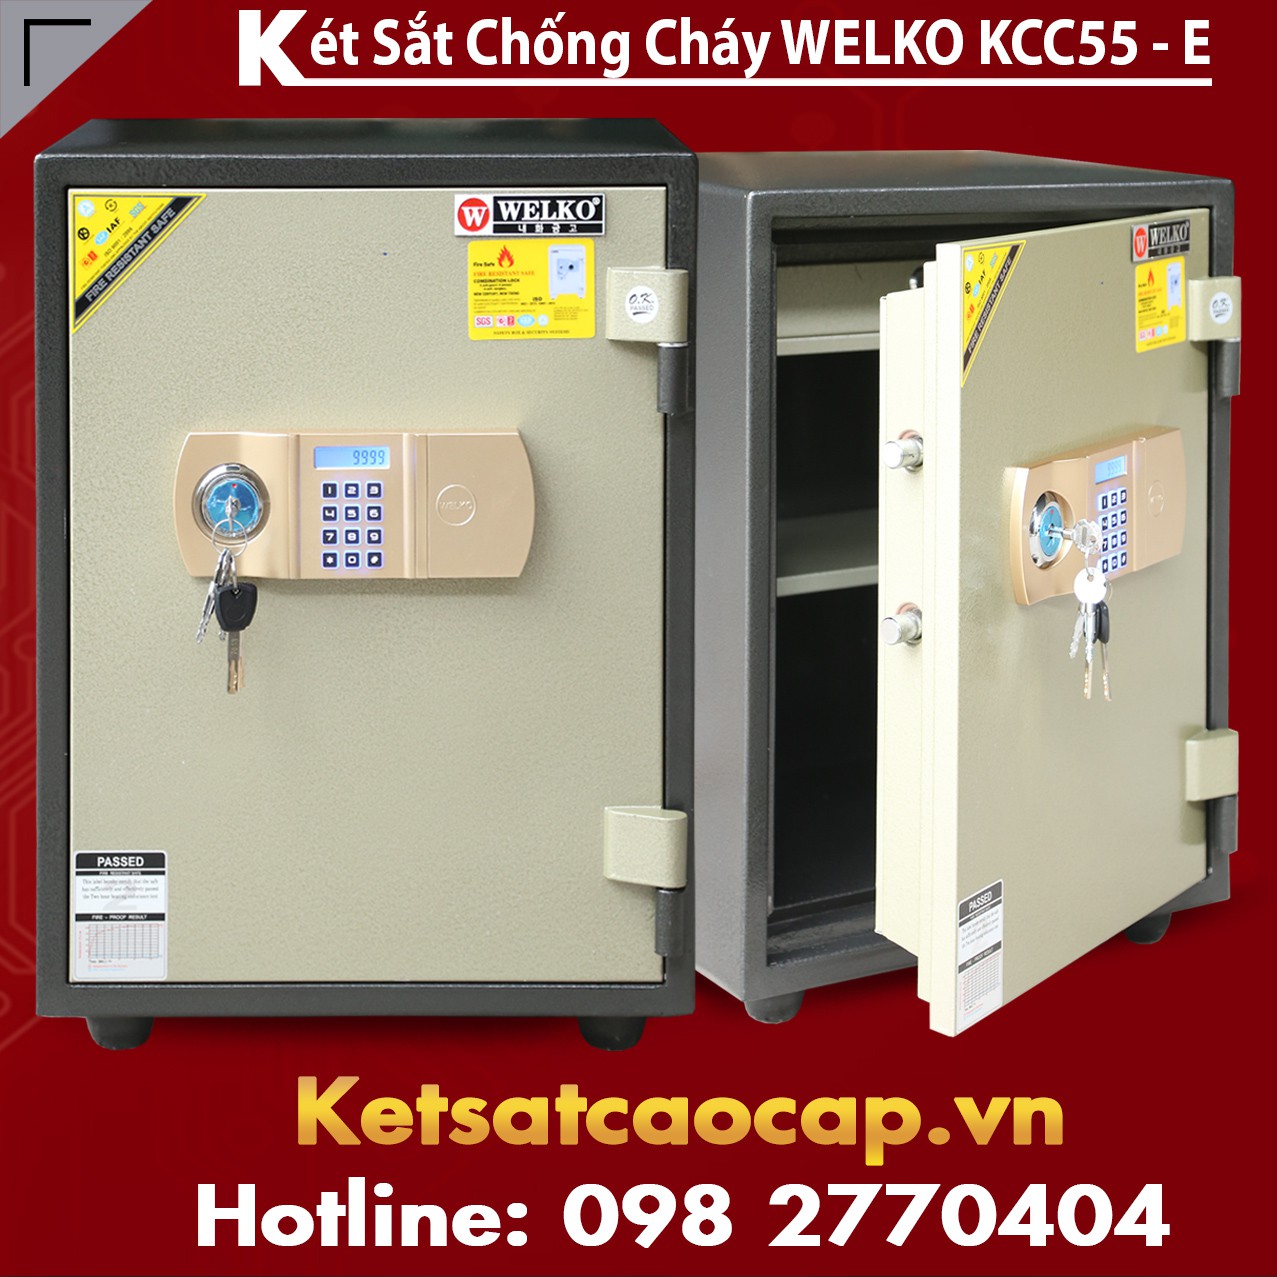 Ket Sat Chong Chay KCC55 E - GOLD